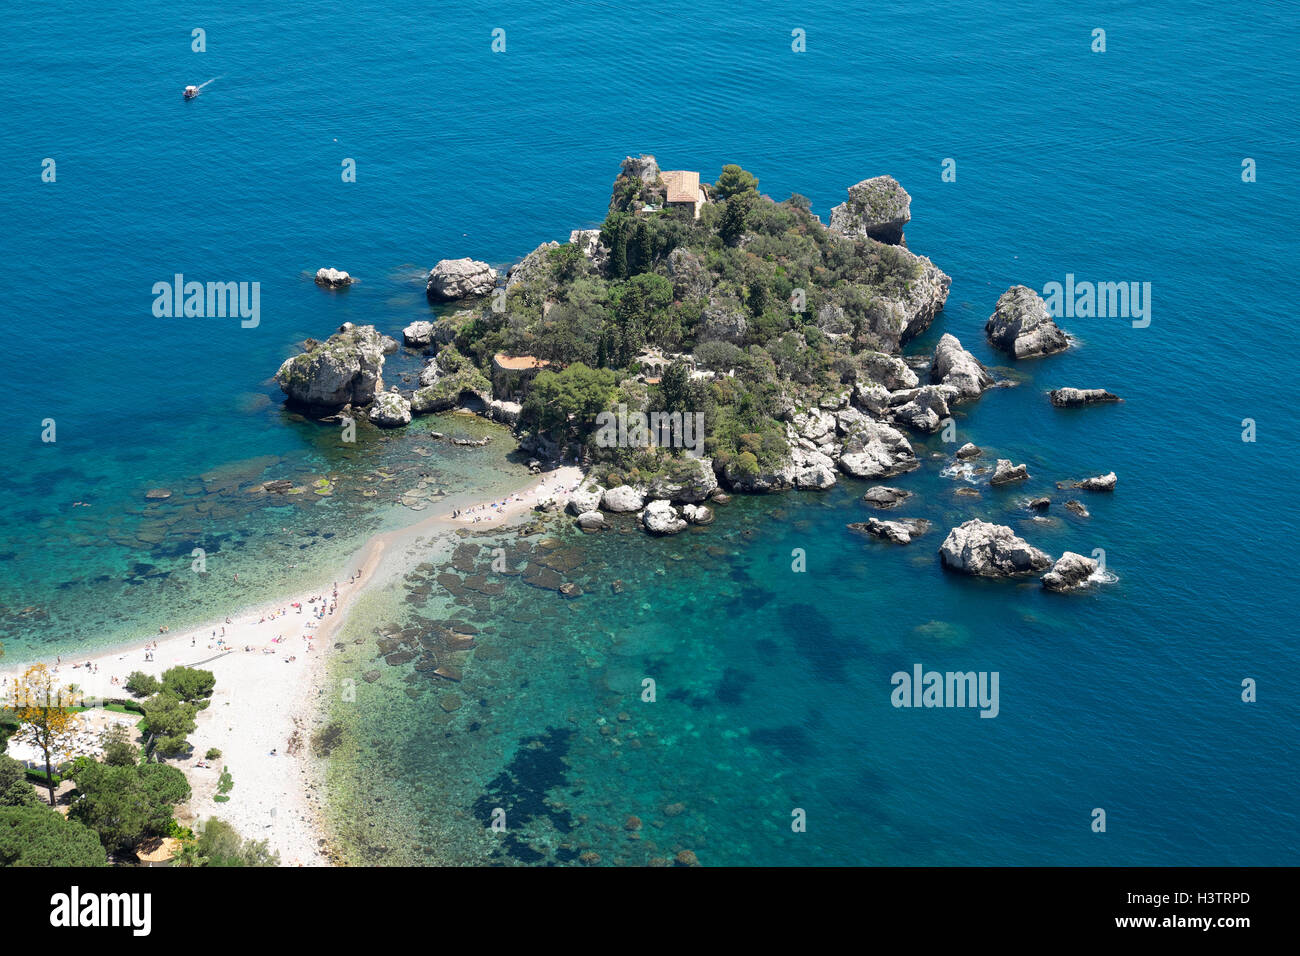 Isola Bella, Mazzaró near Taormina, Sicily, Italy Stock Photo